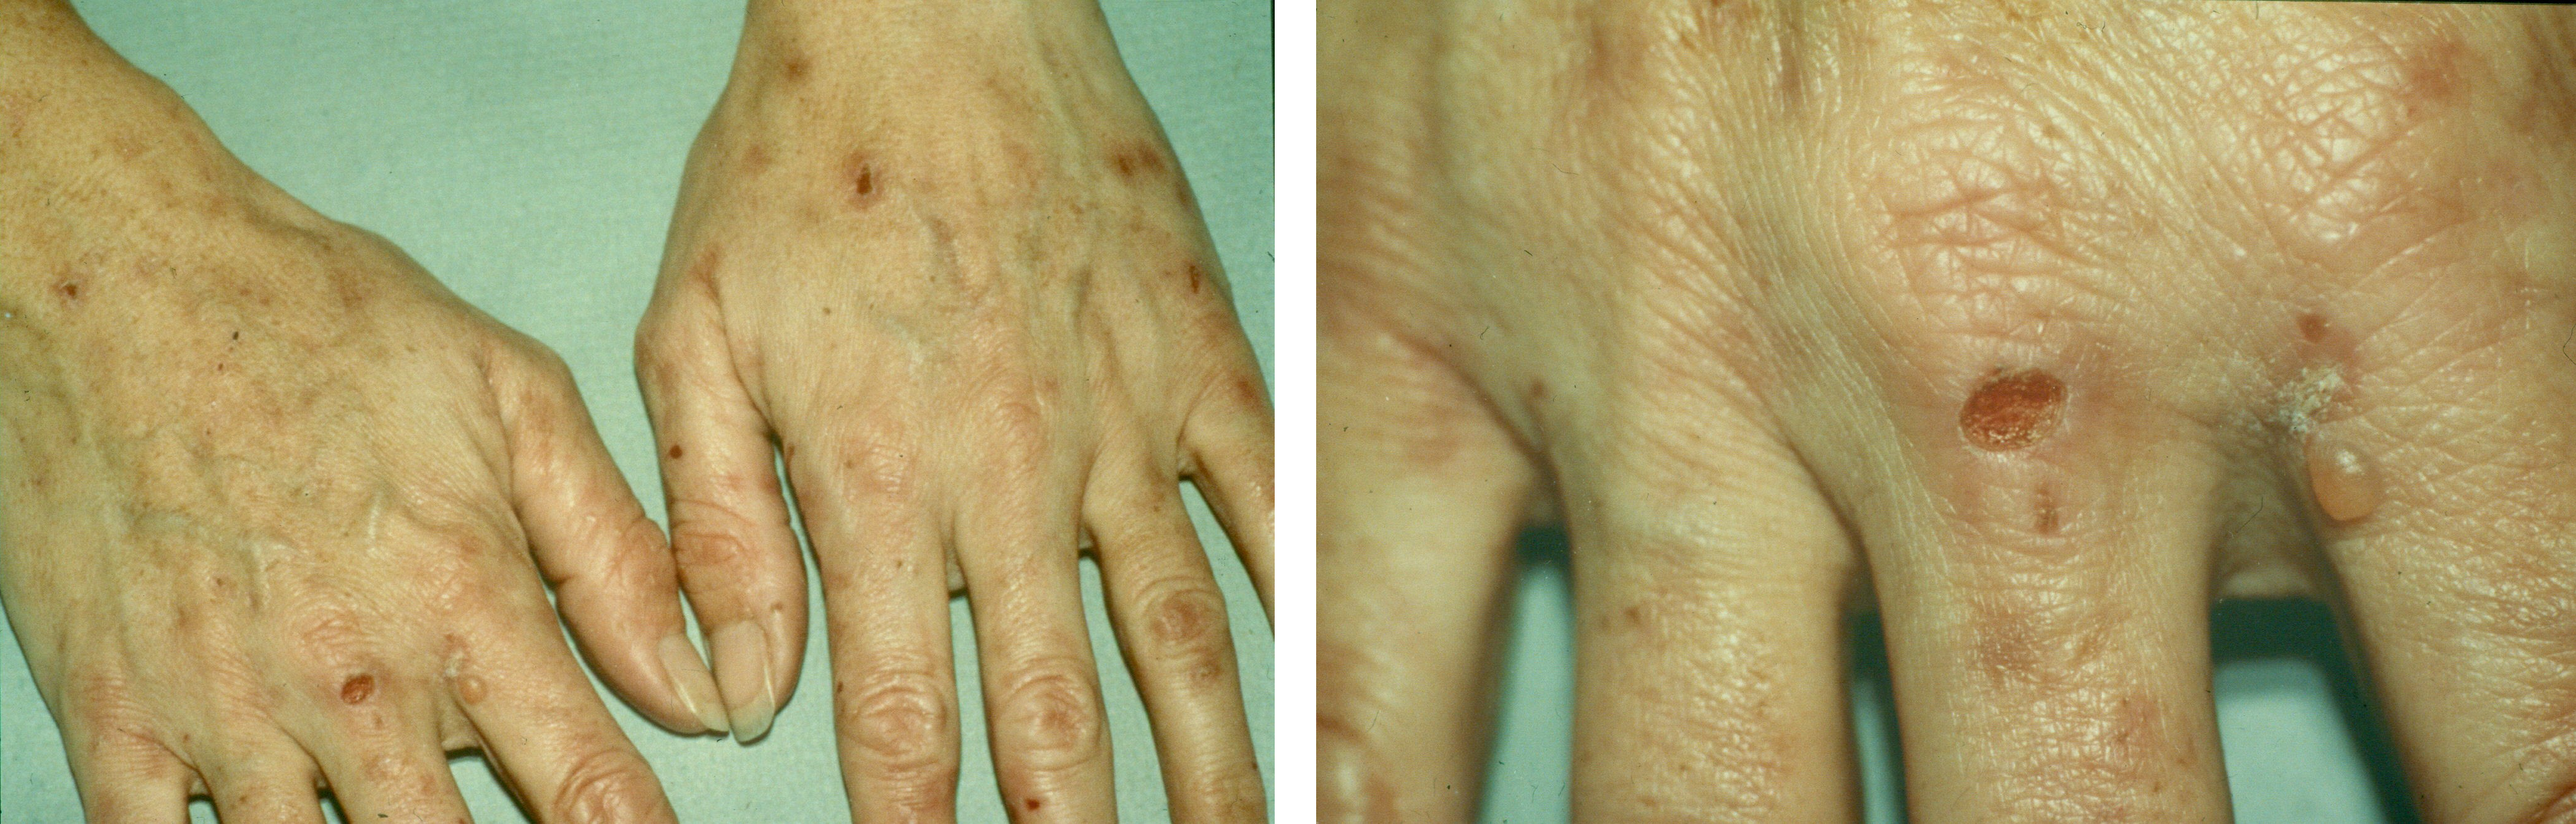 Hände einer Patientin mit Porphyria variegata: Blasen, Erosionen, Krusten und Narben sind typisch bei dieser Form der akuten Porphyrie.